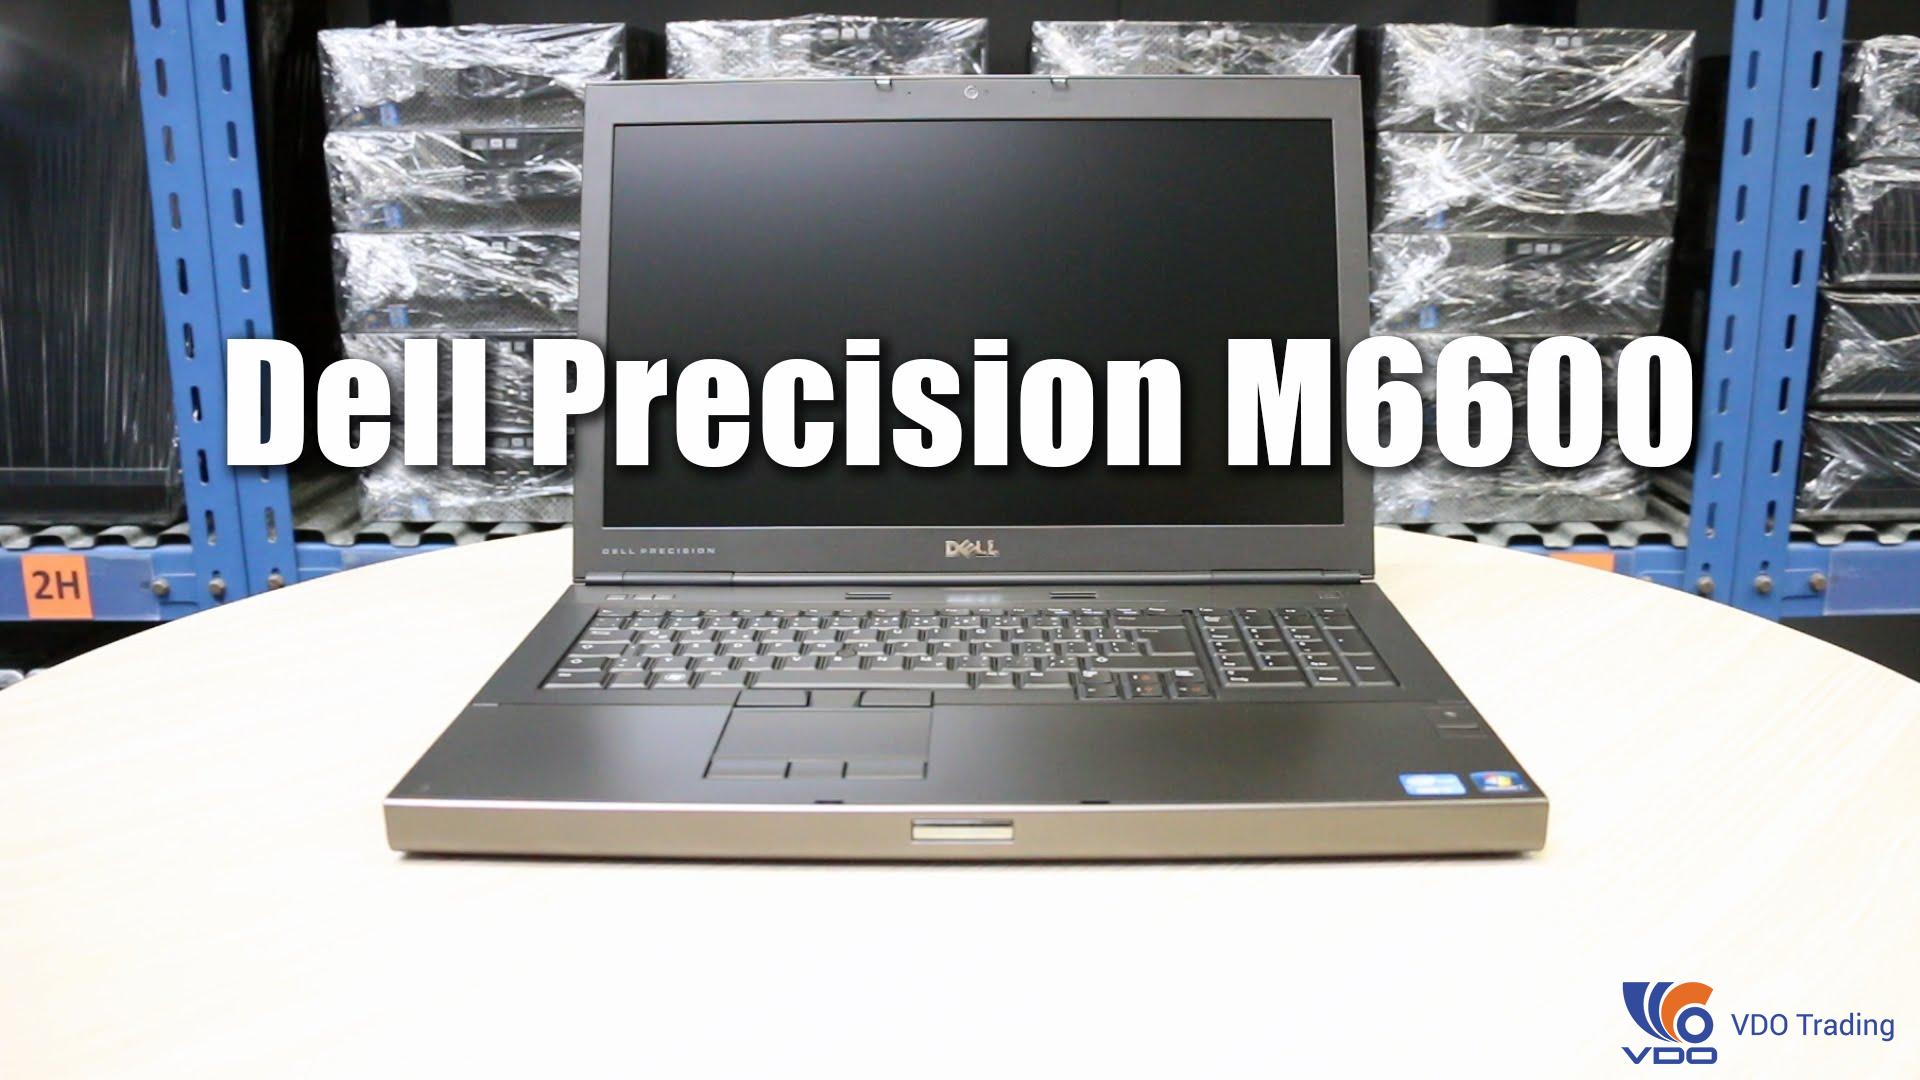 Chi tiết máy trạm Dell Precision M6600